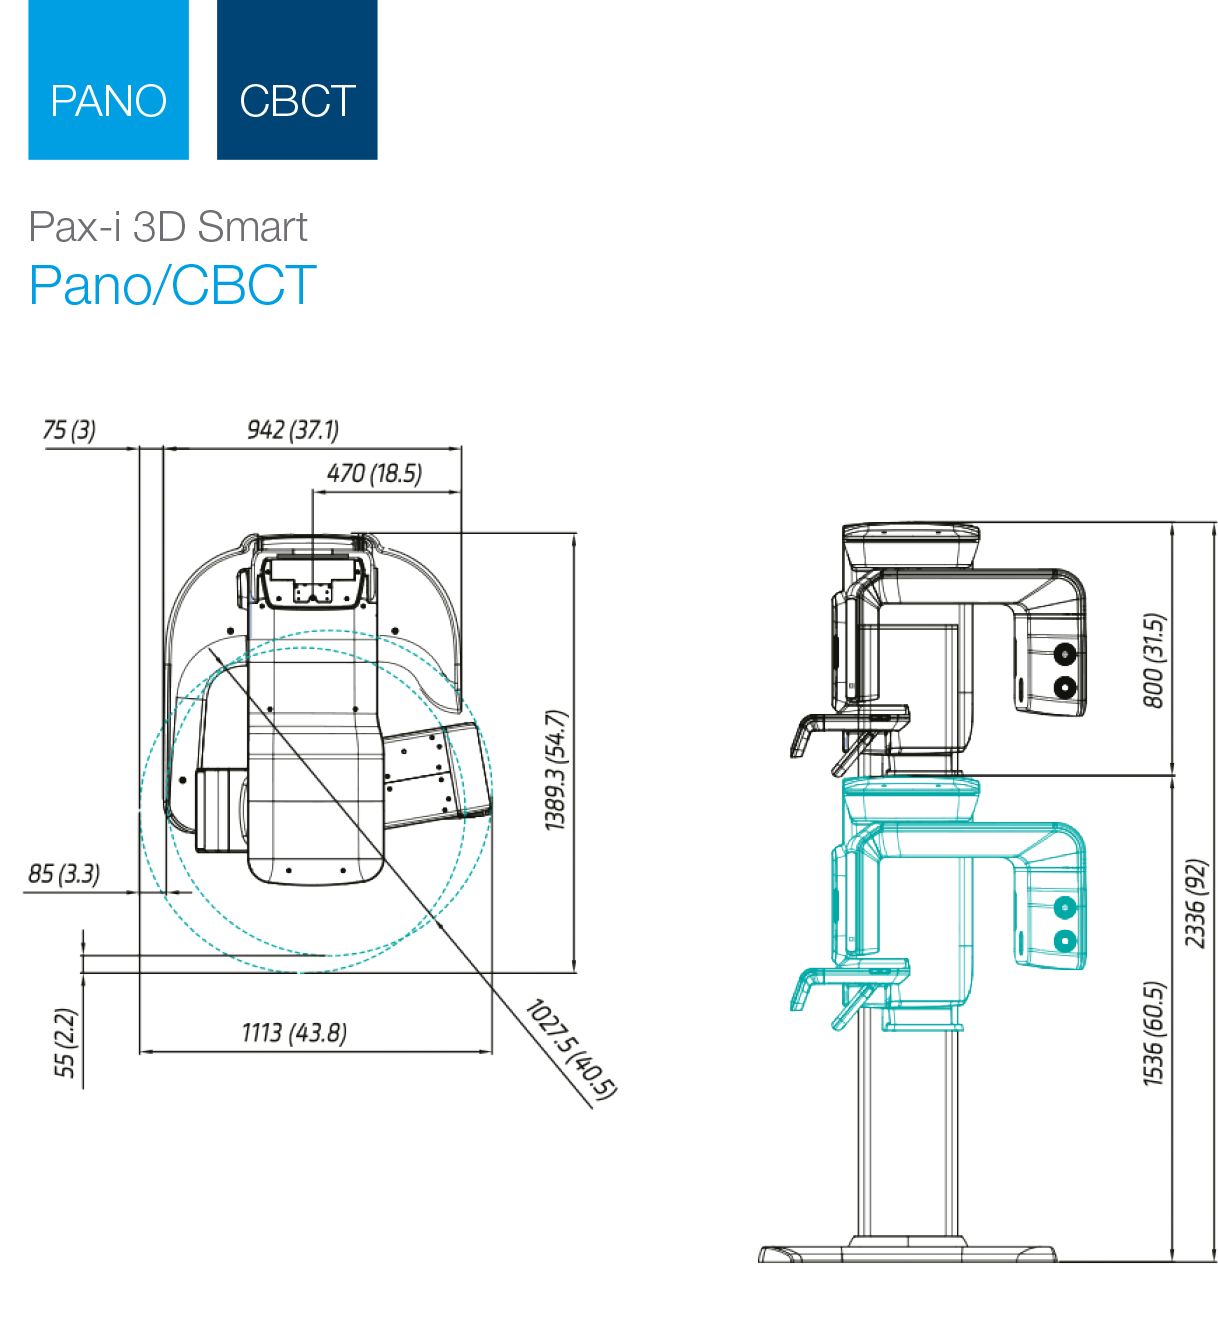 Pax-i 3D SmartGT – predisposizione